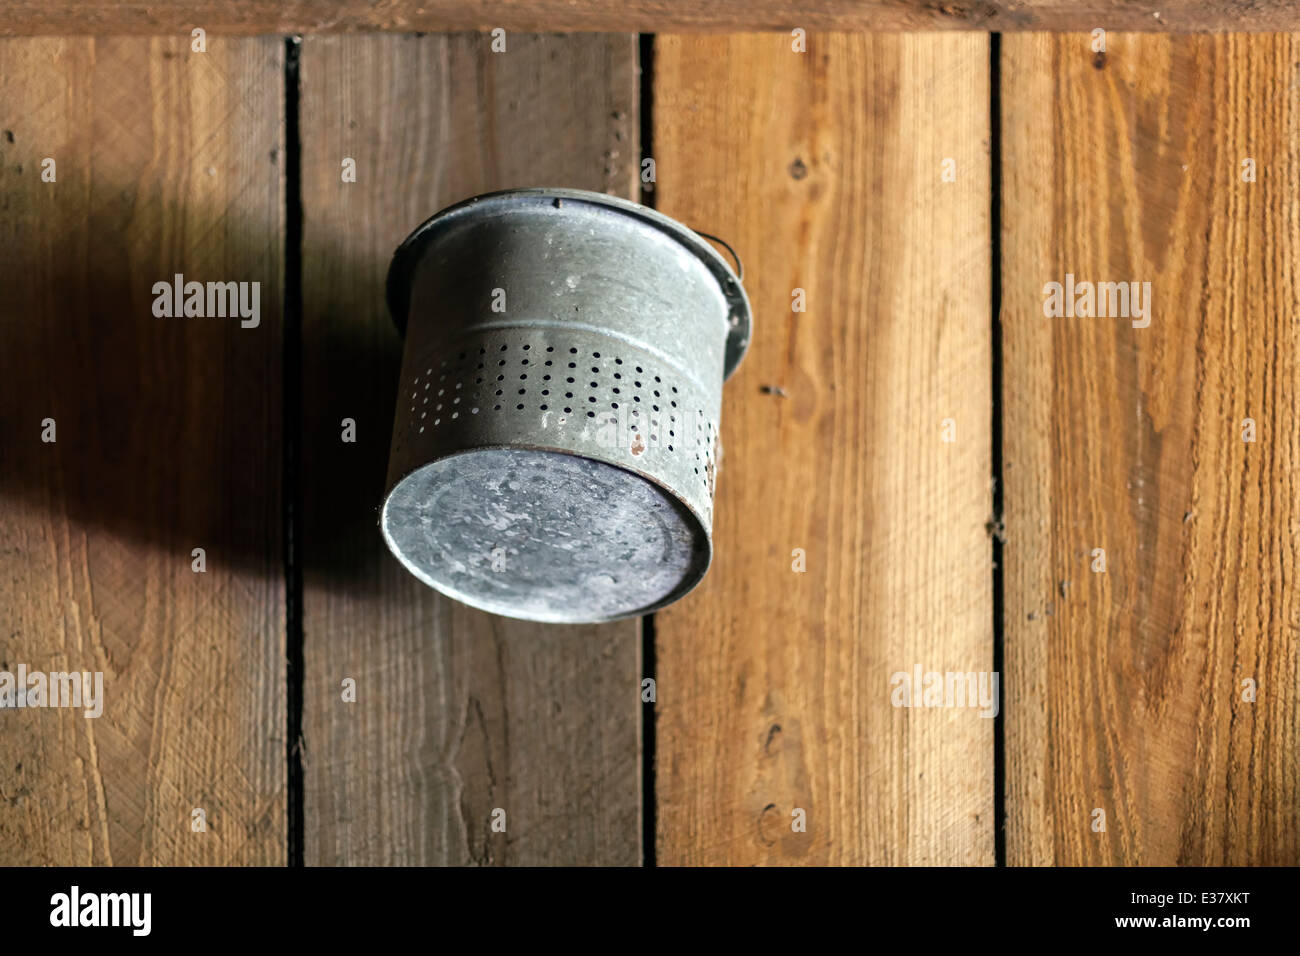 Alte verzinkte Stahl-Eimer oder Eimer hängt an die Holzwand einer alten Scheune. USA Stockfoto